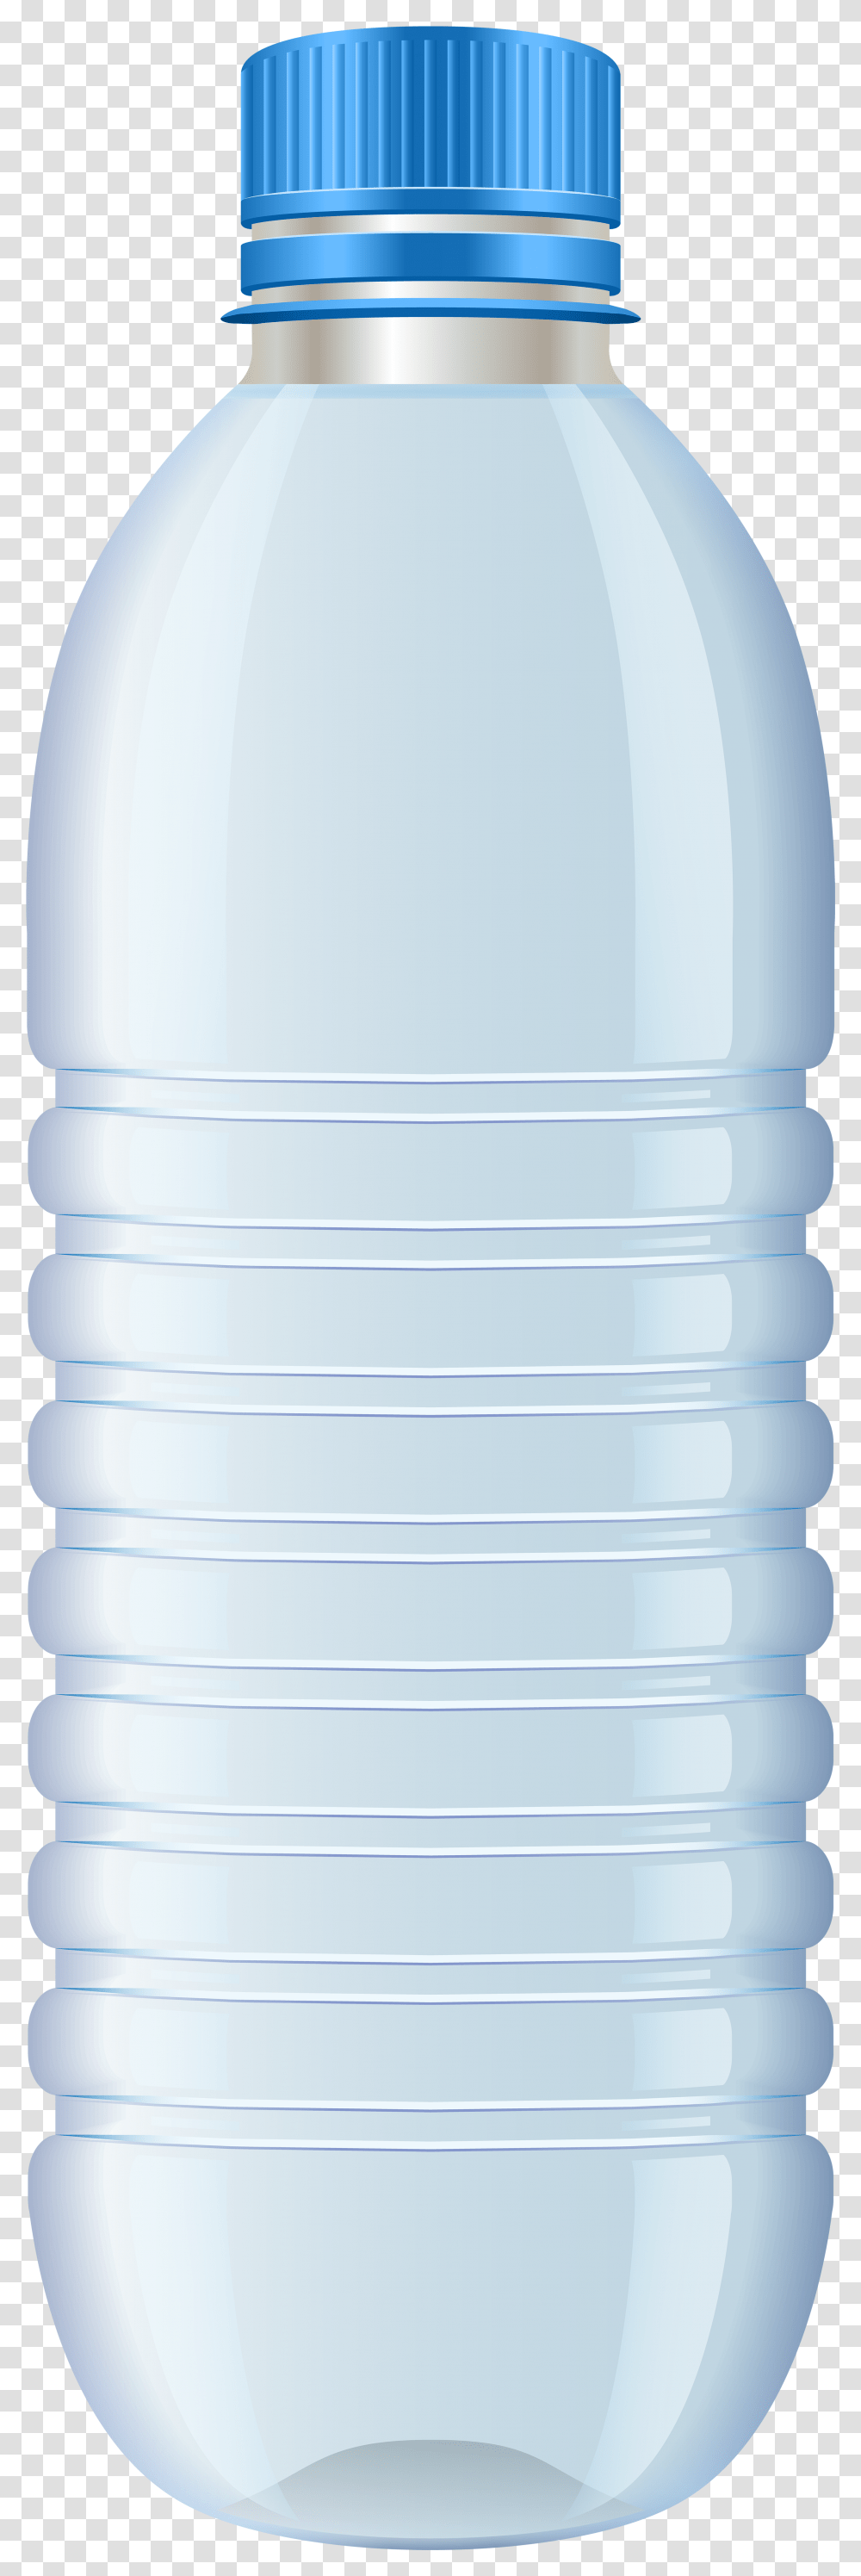 Water Bottle Water Bottle, Mineral Water, Beverage, Drink, Shaker Transparent Png